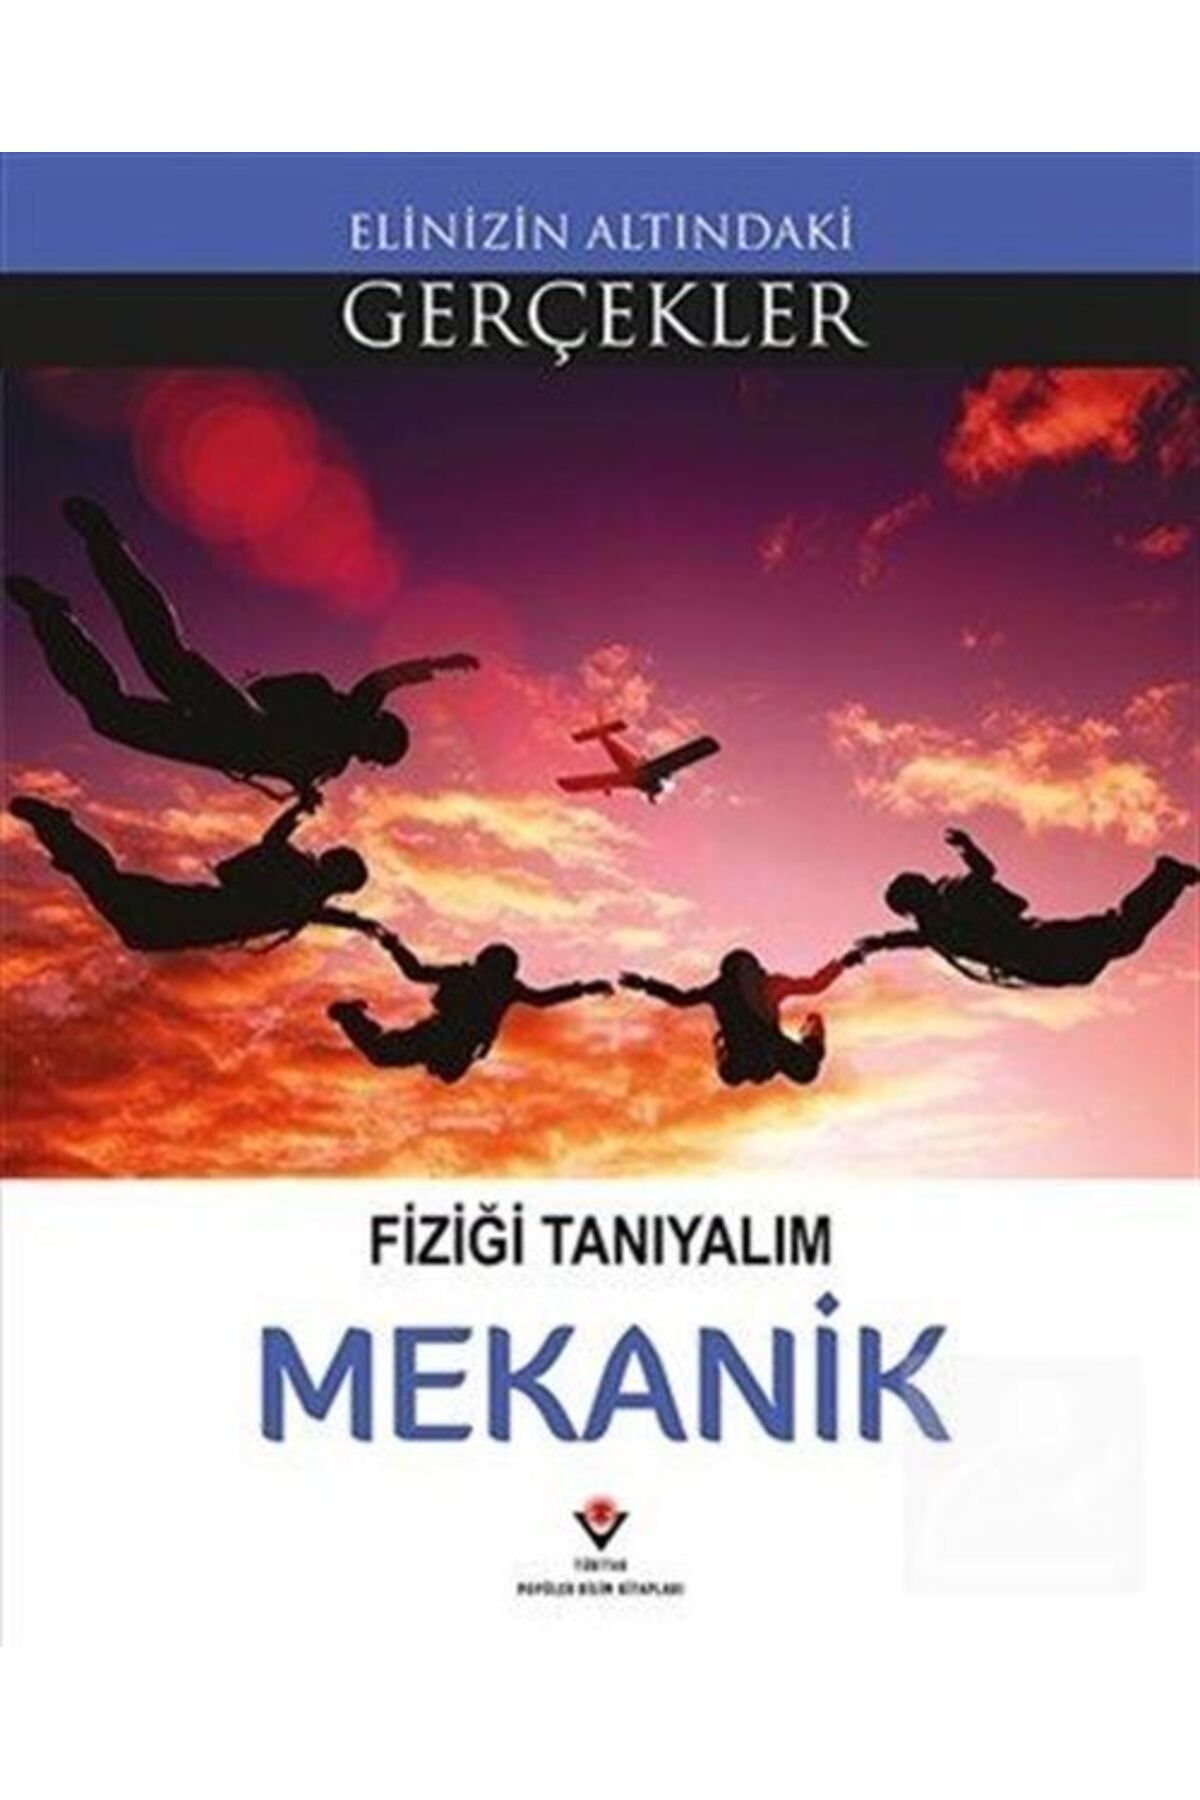 Tübitak Yayınları Fiziği Tanıyalım -mekanik / Elinizin Altındaki Gerçekler